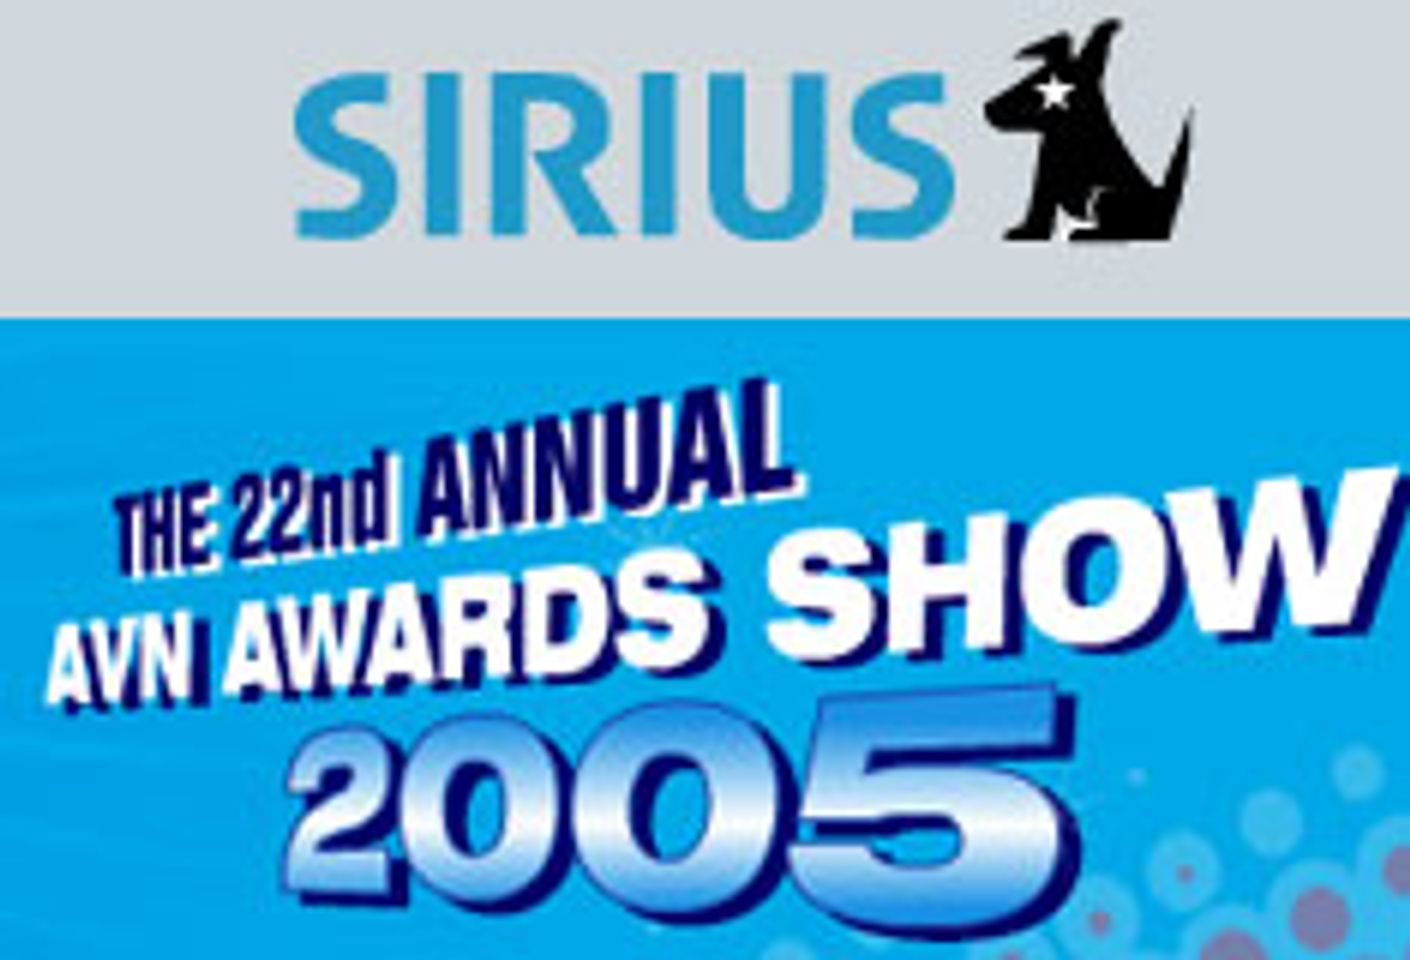 SIRIUS Satellite Radio to Broadcast AVN Awards